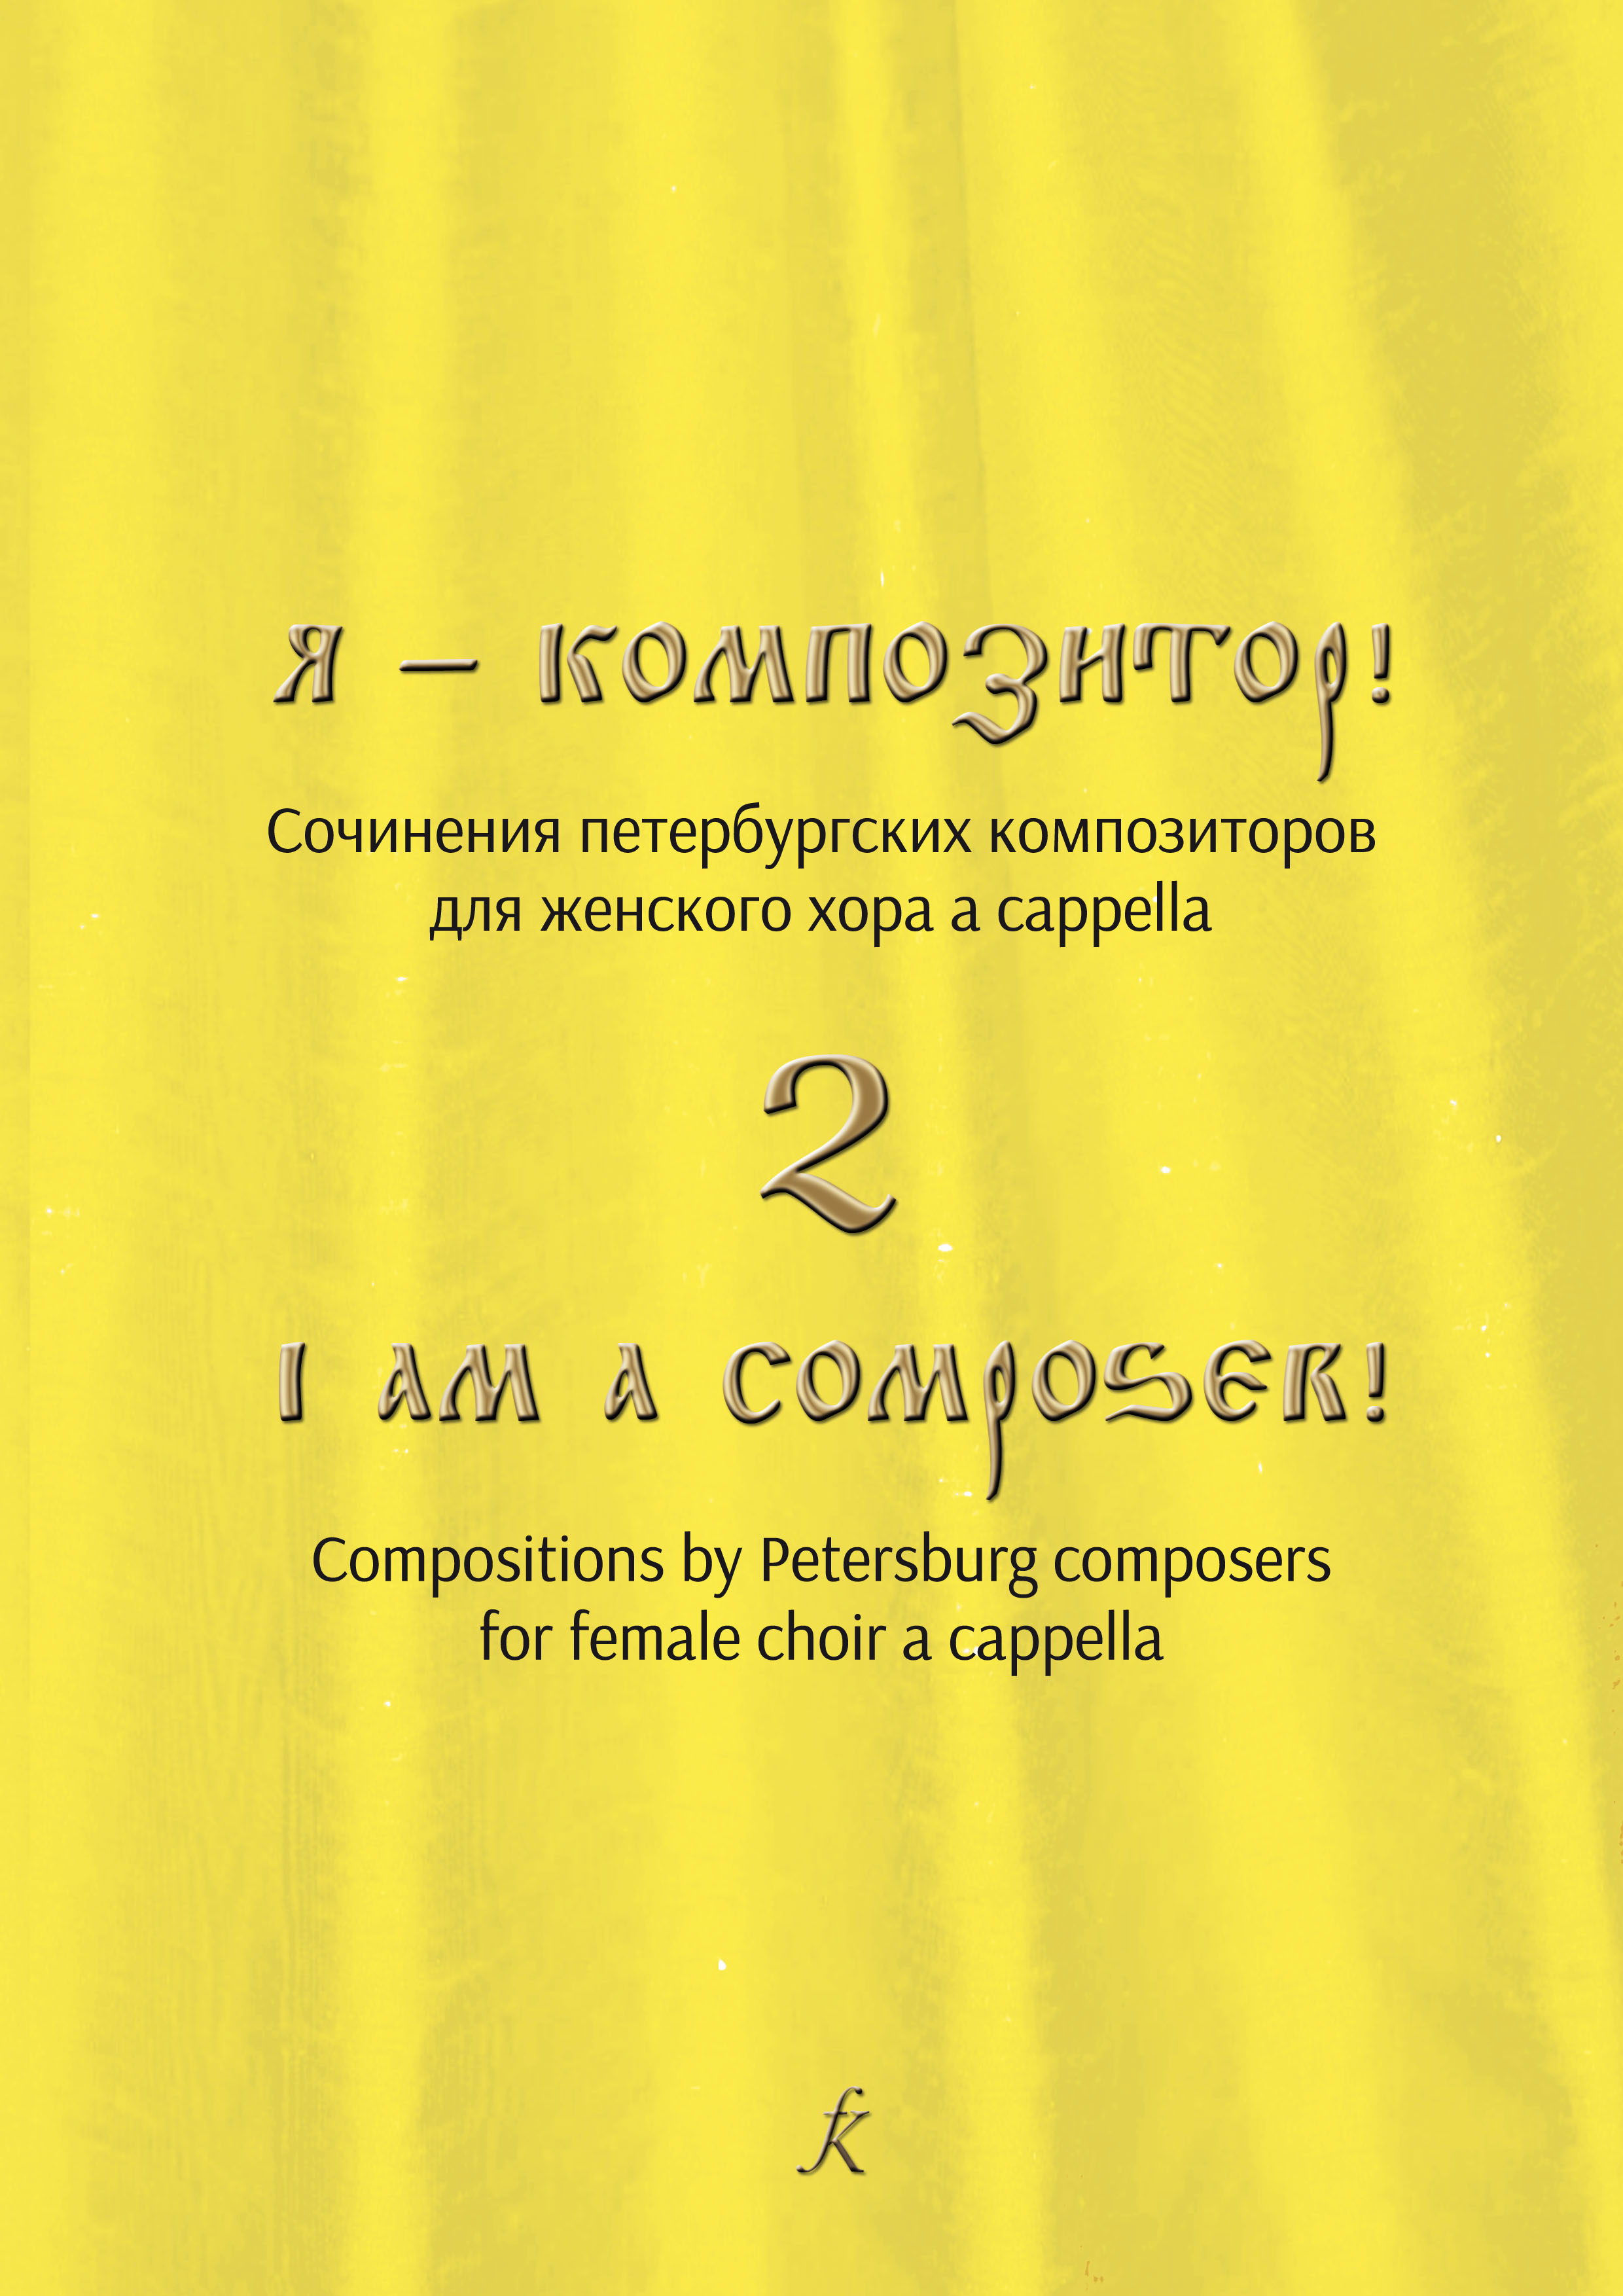 Екимов С. Я — композитор! Соч. петербургских композиторов для женского хора a cappella. Вып. 2